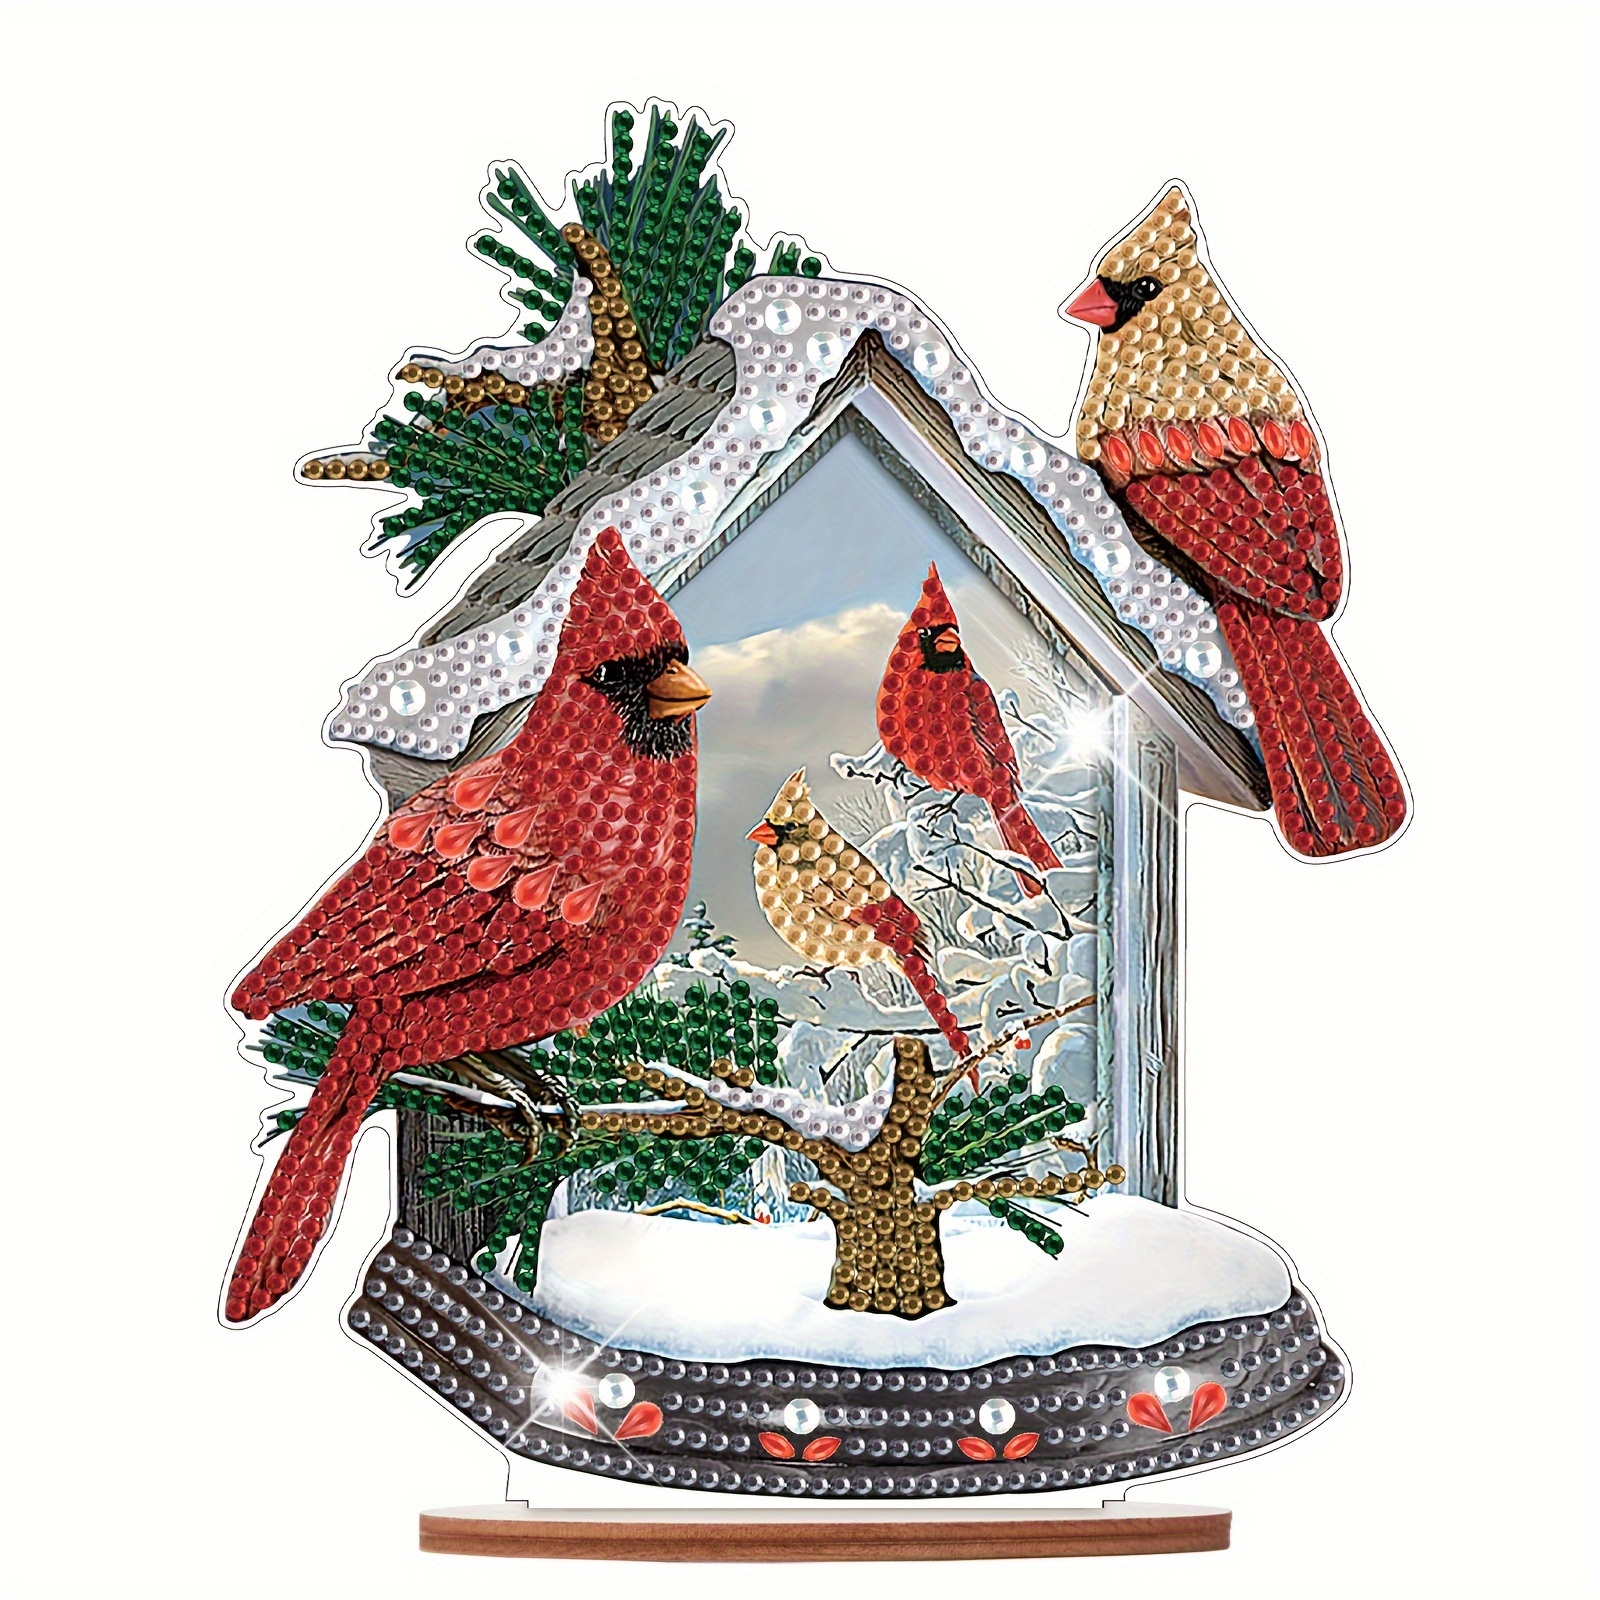  Cardinal Diamond Art Kits for Adults - Christmas